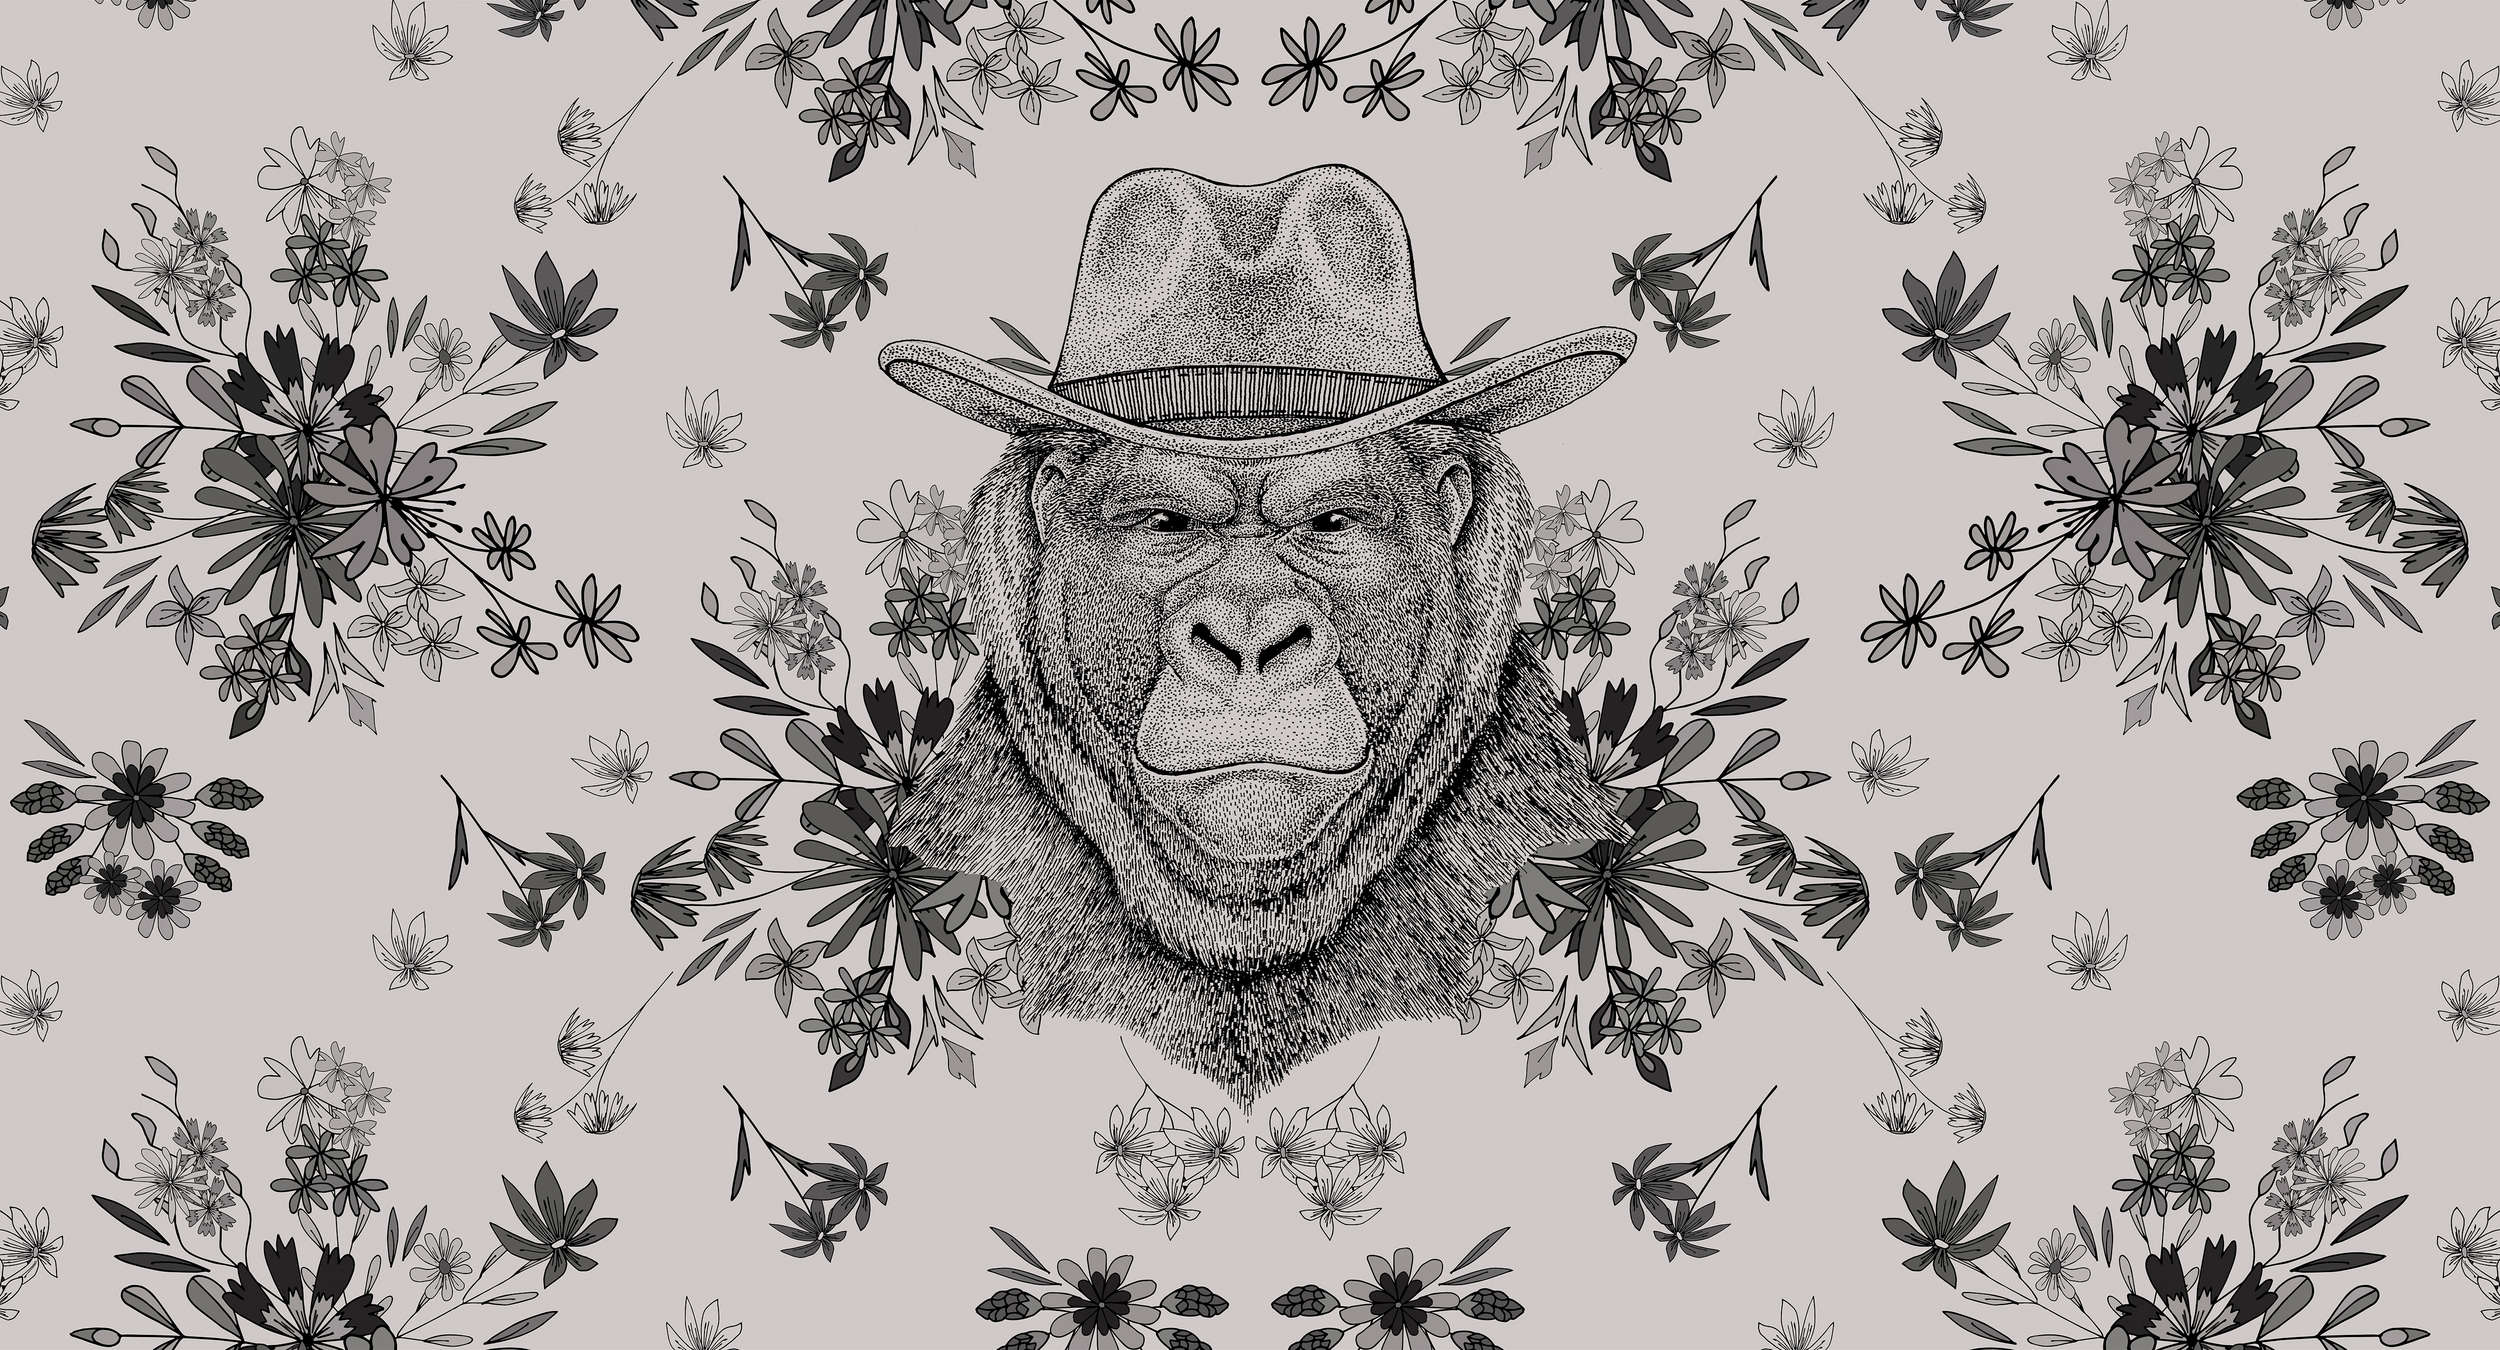             Papel pintado de diseño Gorila en estilo dibujo - Gris, Negro
        